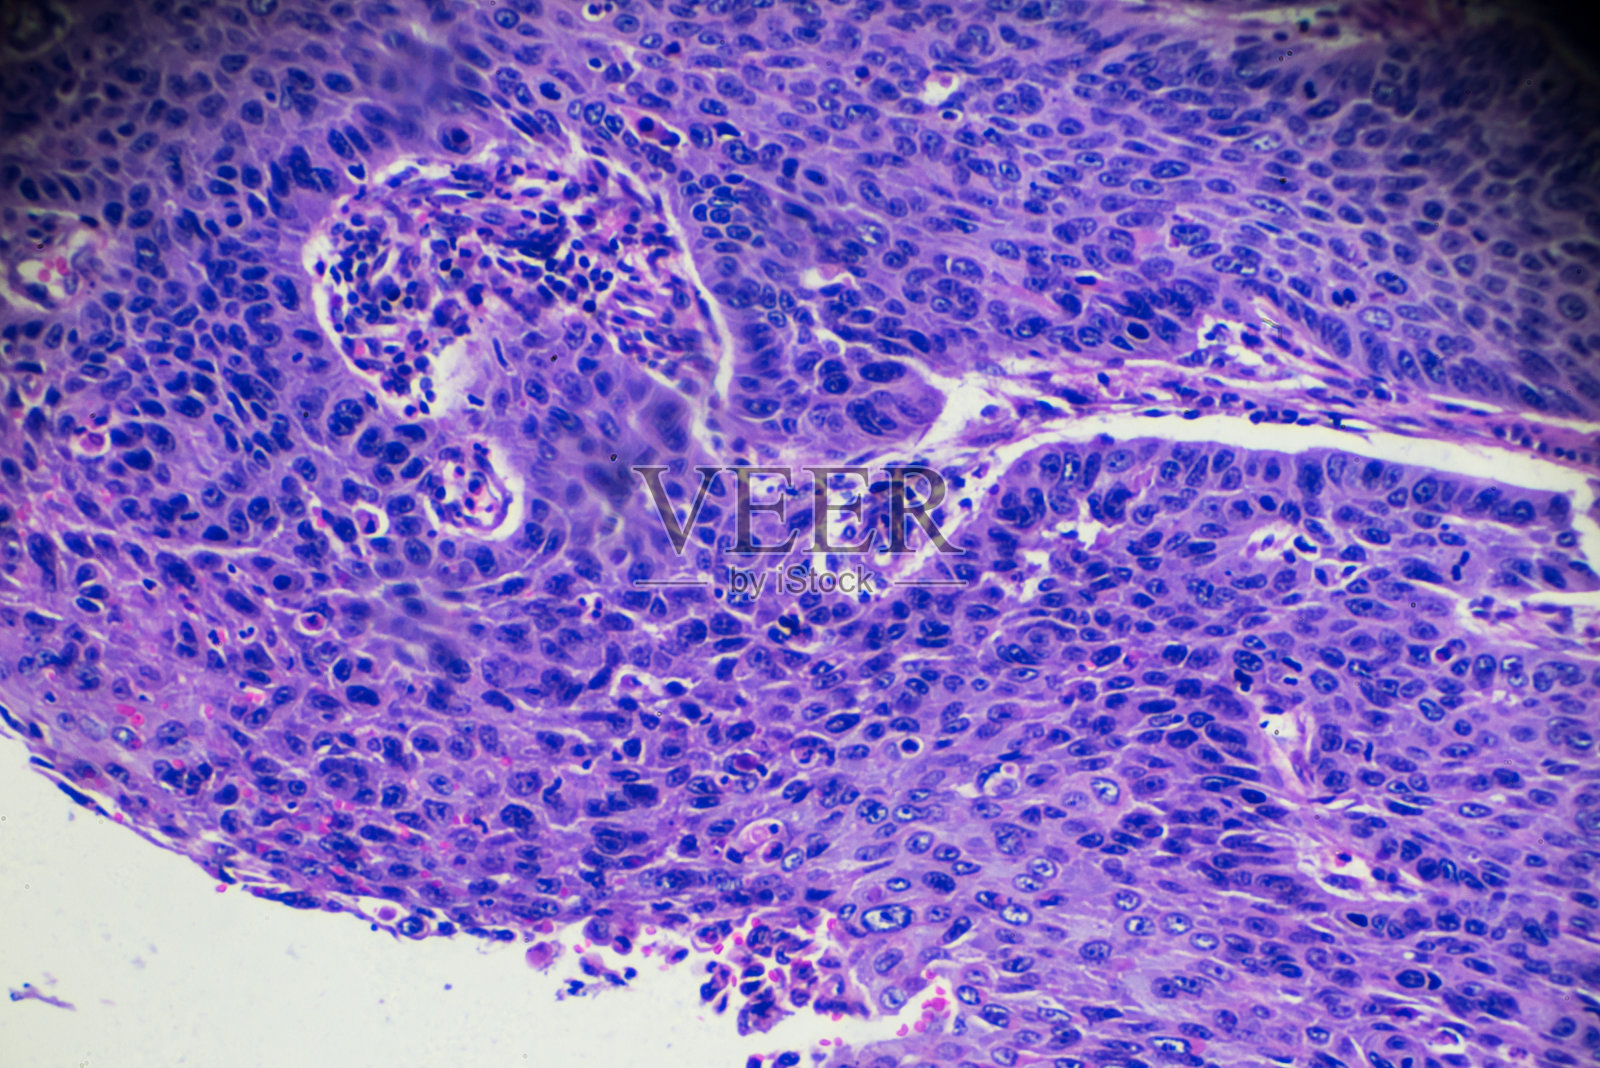 食管癌(高分化鳞状病变)照片摄影图片